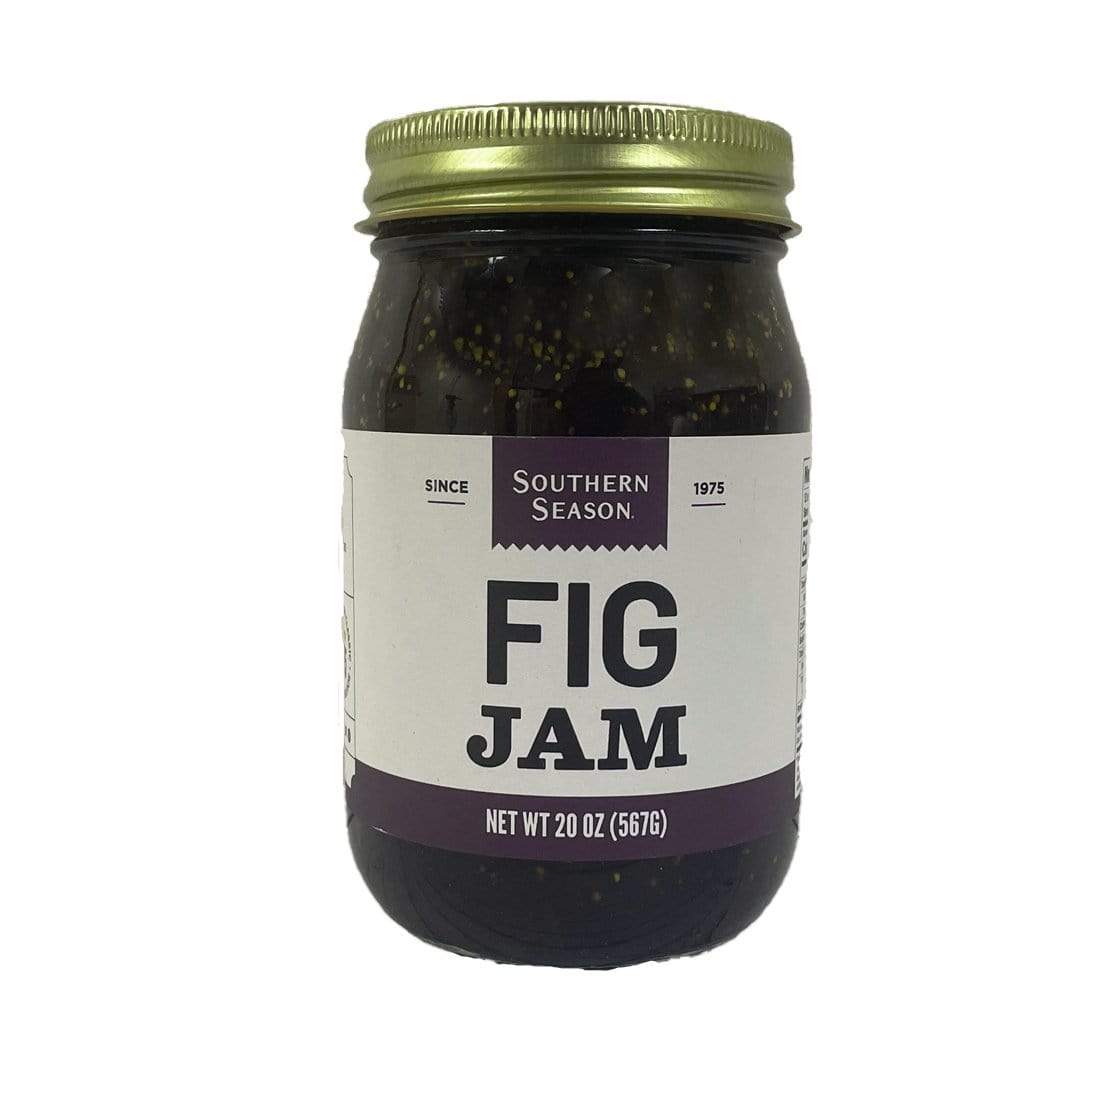 Southern Season Southern Season Fig Jam 20 oz